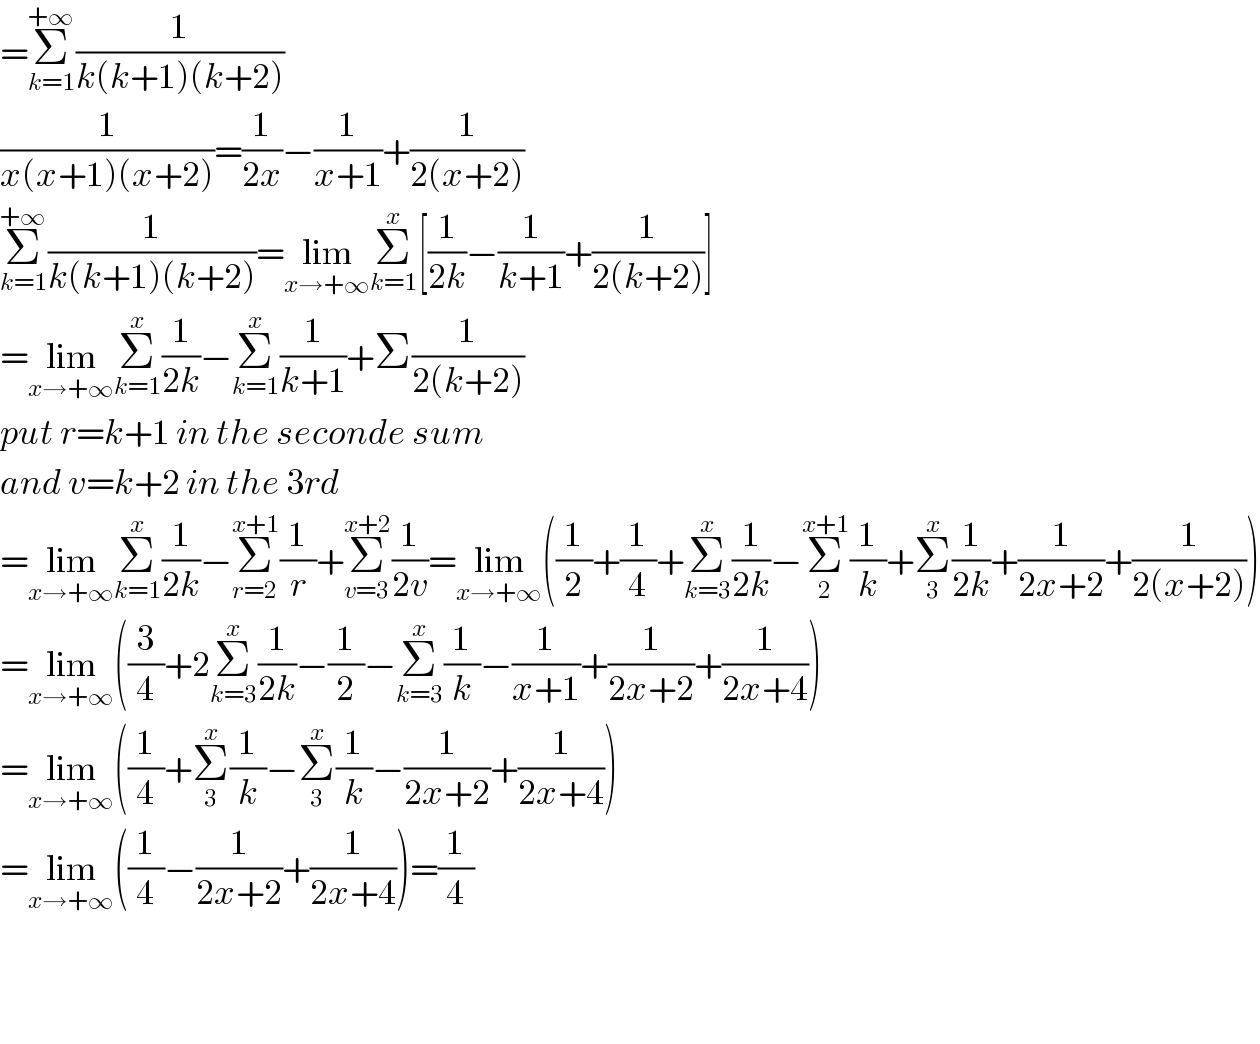 =Σ_(k=1) ^(+∞) (1/(k(k+1)(k+2)))  (1/(x(x+1)(x+2)))=(1/(2x))−(1/(x+1))+(1/(2(x+2)))  Σ_(k=1) ^(+∞) (1/(k(k+1)(k+2)))=lim_(x→+∞) Σ_(k=1) ^x [(1/(2k))−(1/(k+1))+(1/(2(k+2)))]  =lim_(x→+∞) Σ_(k=1) ^x (1/(2k))−Σ_(k=1) ^x (1/(k+1))+Σ(1/(2(k+2)))  put r=k+1 in the seconde sum  and v=k+2 in the 3rd  =lim_(x→+∞) Σ_(k=1) ^x (1/(2k))−Σ_(r=2) ^(x+1) (1/r)+Σ_(v=3) ^(x+2) (1/(2v))=lim_(x→+∞) ((1/2)+(1/4)+Σ_(k=3) ^x (1/(2k))−Σ_2 ^(x+1) (1/k)+Σ_3 ^x (1/(2k))+(1/(2x+2))+(1/(2(x+2))))  =lim_(x→+∞) ((3/4)+2Σ_(k=3) ^x (1/(2k))−(1/2)−Σ_(k=3) ^x (1/k)−(1/(x+1))+(1/(2x+2))+(1/(2x+4)))  =lim_(x→+∞) ((1/4)+Σ_3 ^x (1/k)−Σ_3 ^x (1/k)−(1/(2x+2))+(1/(2x+4)))  =lim_(x→+∞) ((1/4)−(1/(2x+2))+(1/(2x+4)))=(1/4)      